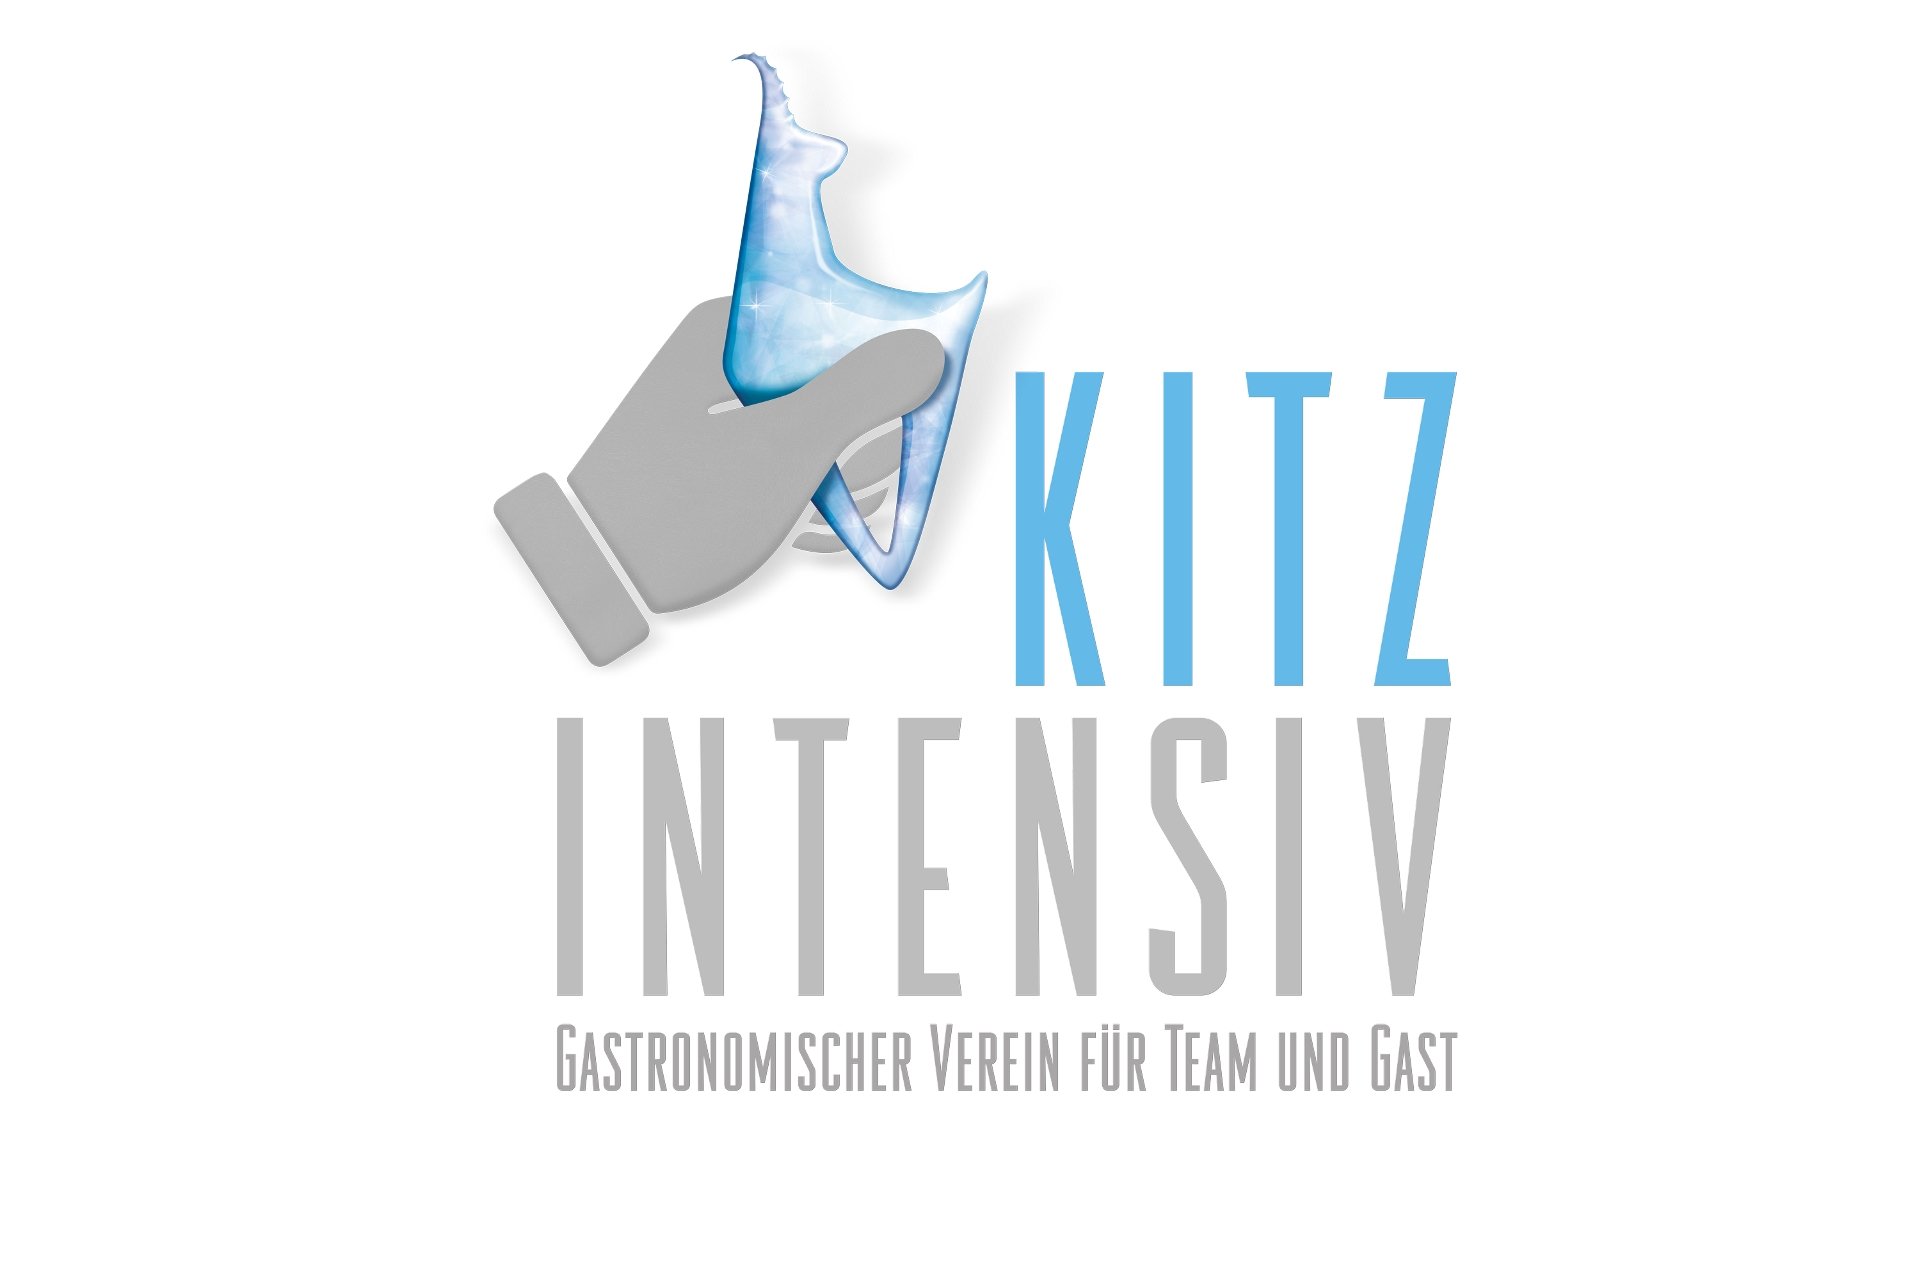 Das Kitzbüheler Kitz ziert das Logo des Vereins.